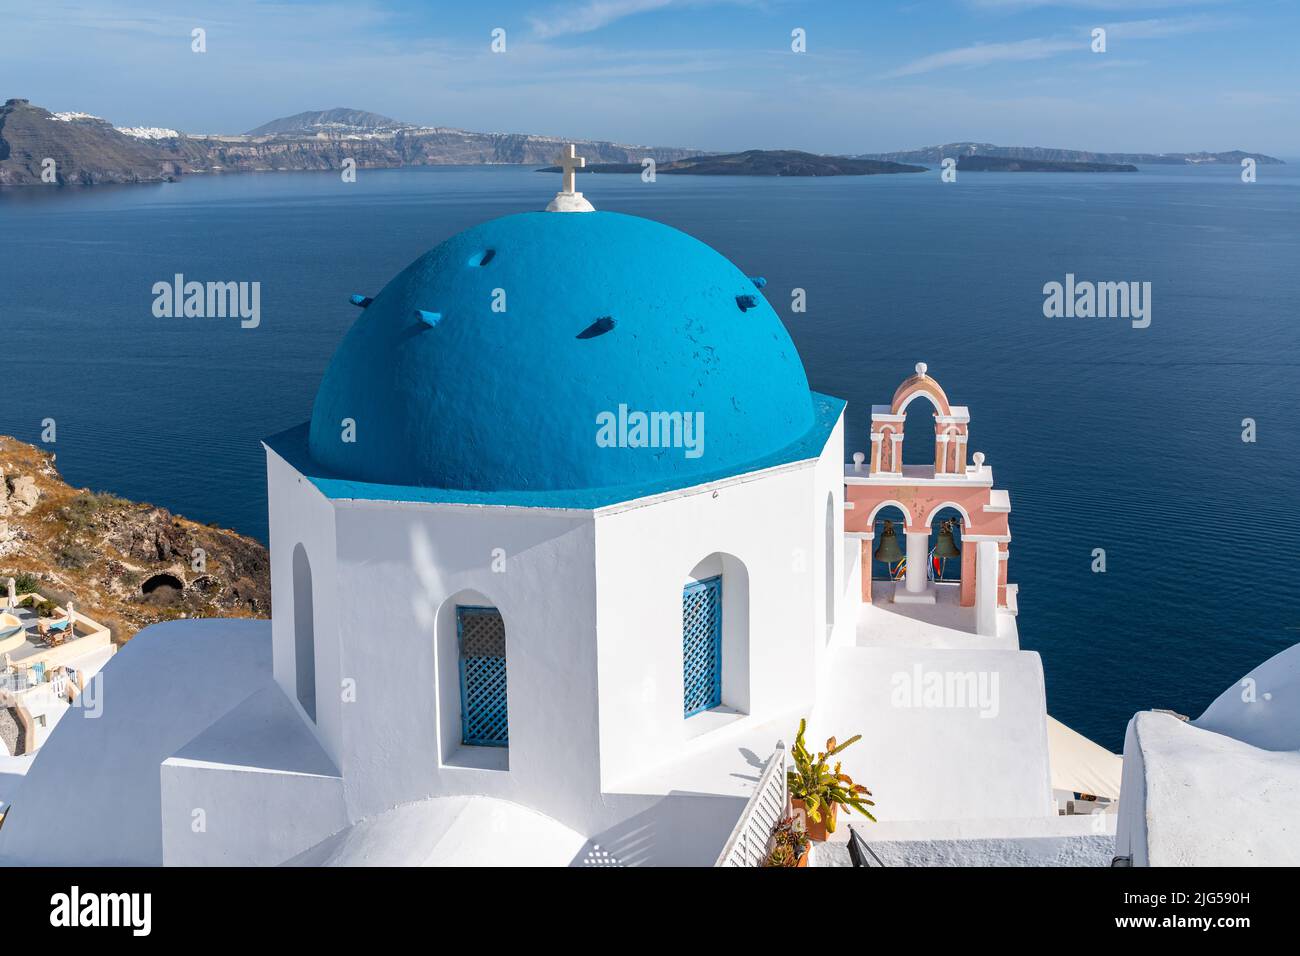 Famosa chiesa a cupola blu a Oia, Santorini, che offre un bel panorama sul mare e la caldera, Grecia Foto Stock